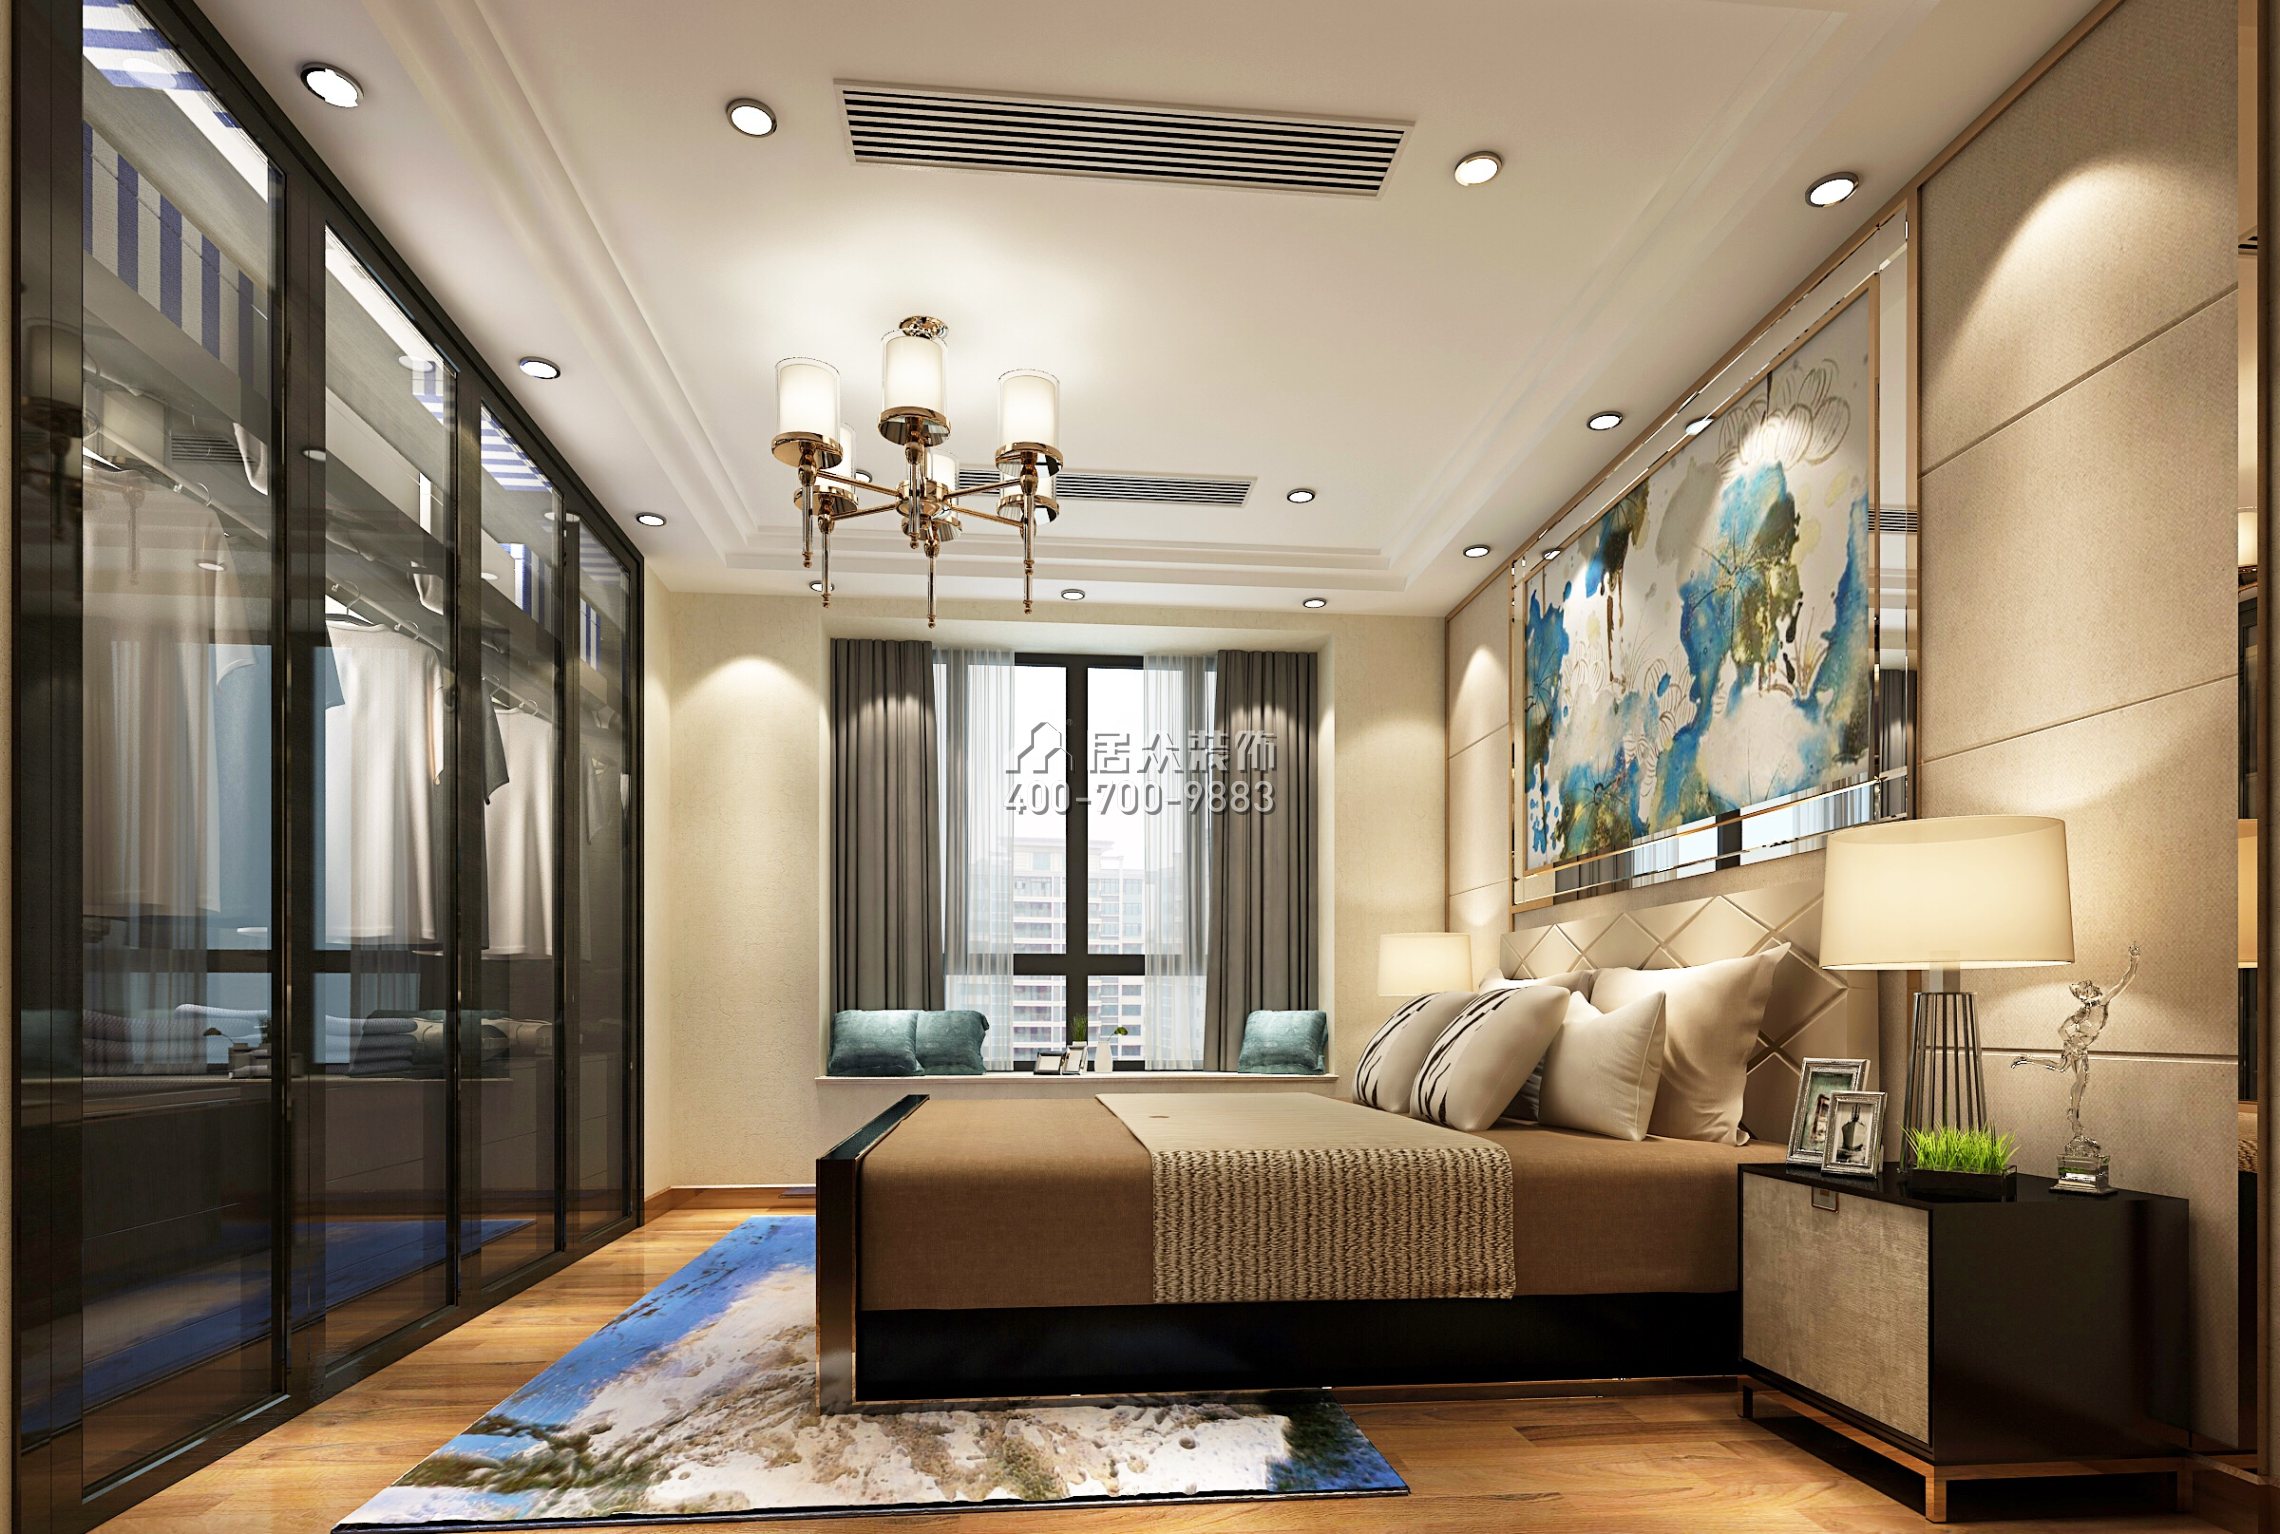 大信君汇湾240平方米新古典风格平层户型卧室开元官网效果图